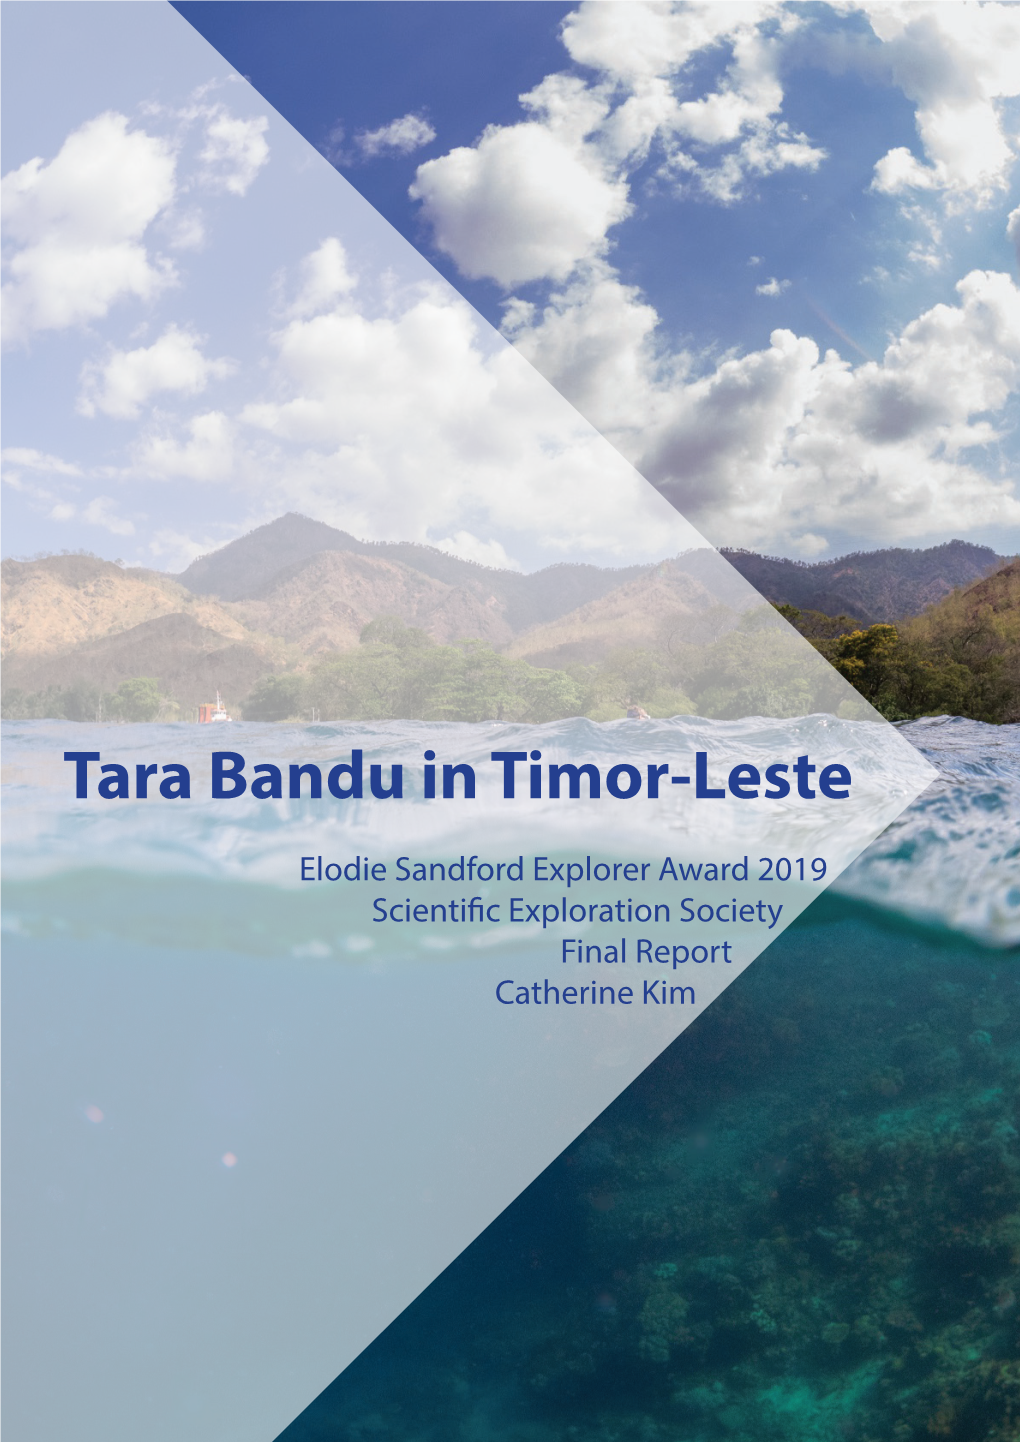 Tara Bandu in Timor-Leste